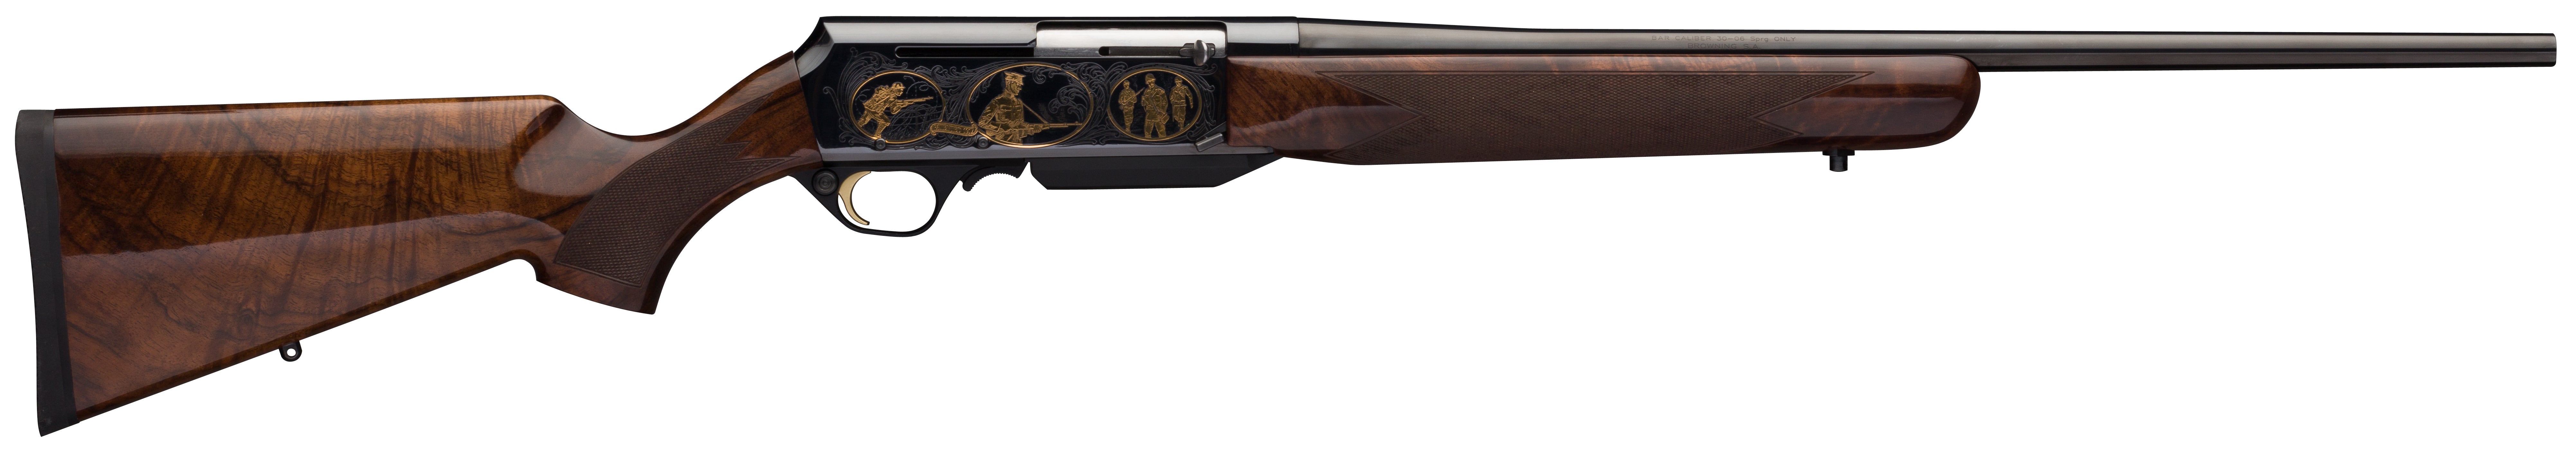 rifle browning safari